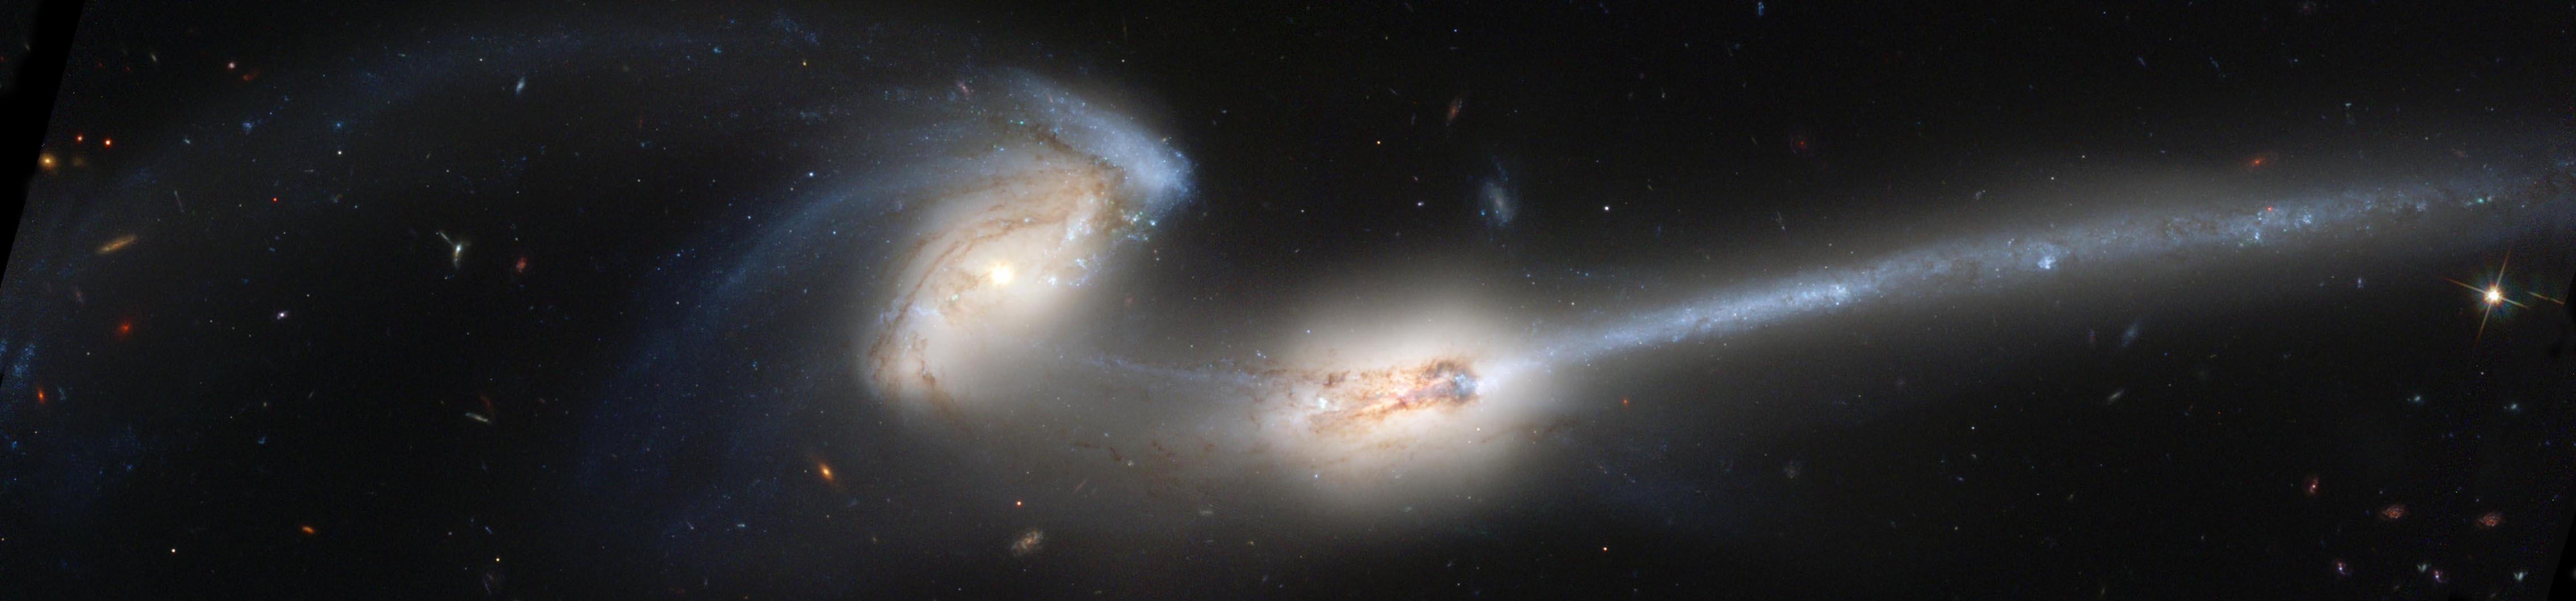 NGC 4676 The Mice